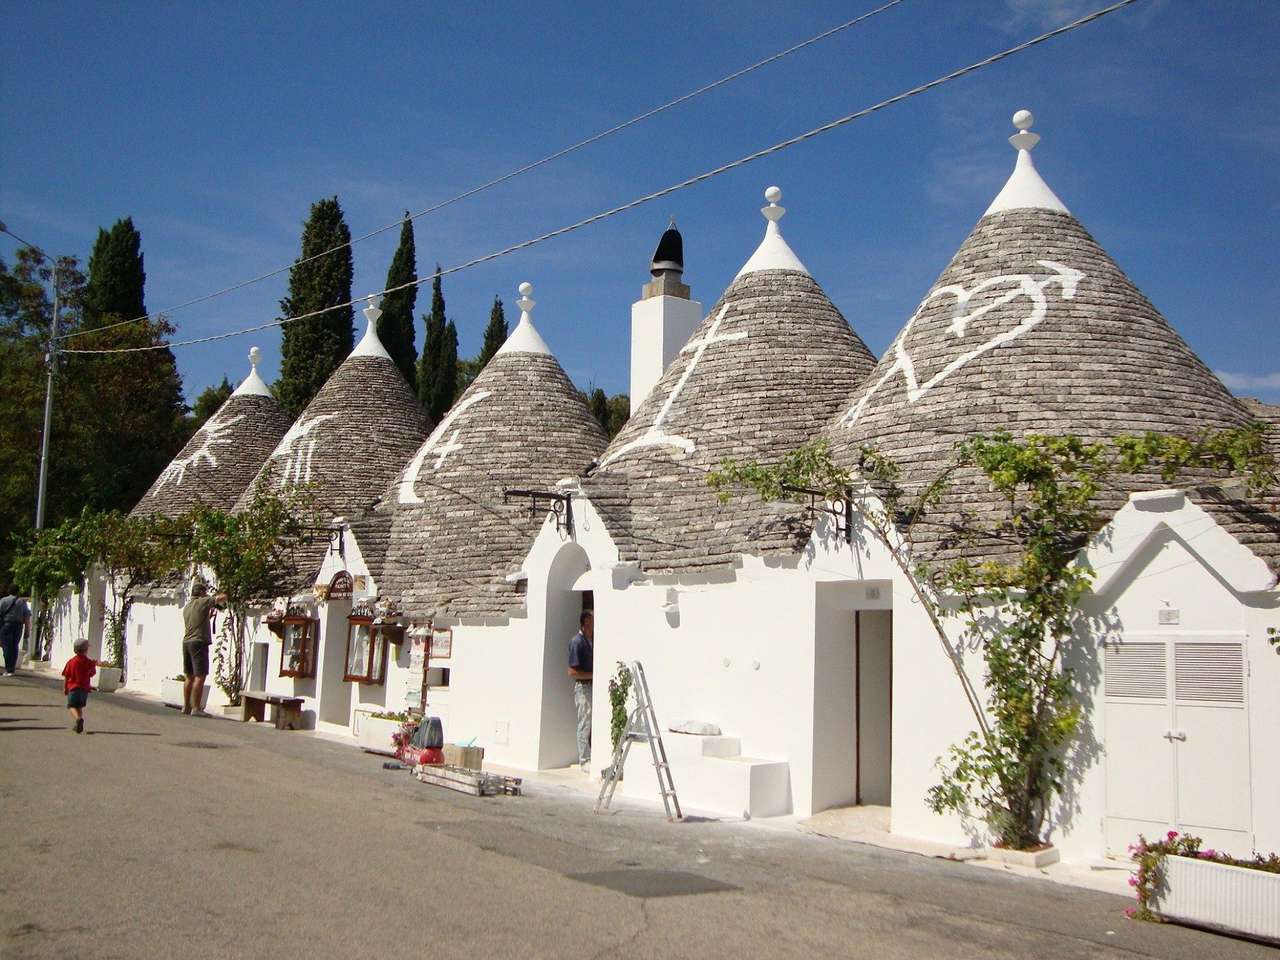 Alberobello Tradycyjne domy trulli w Apulii puzzle online